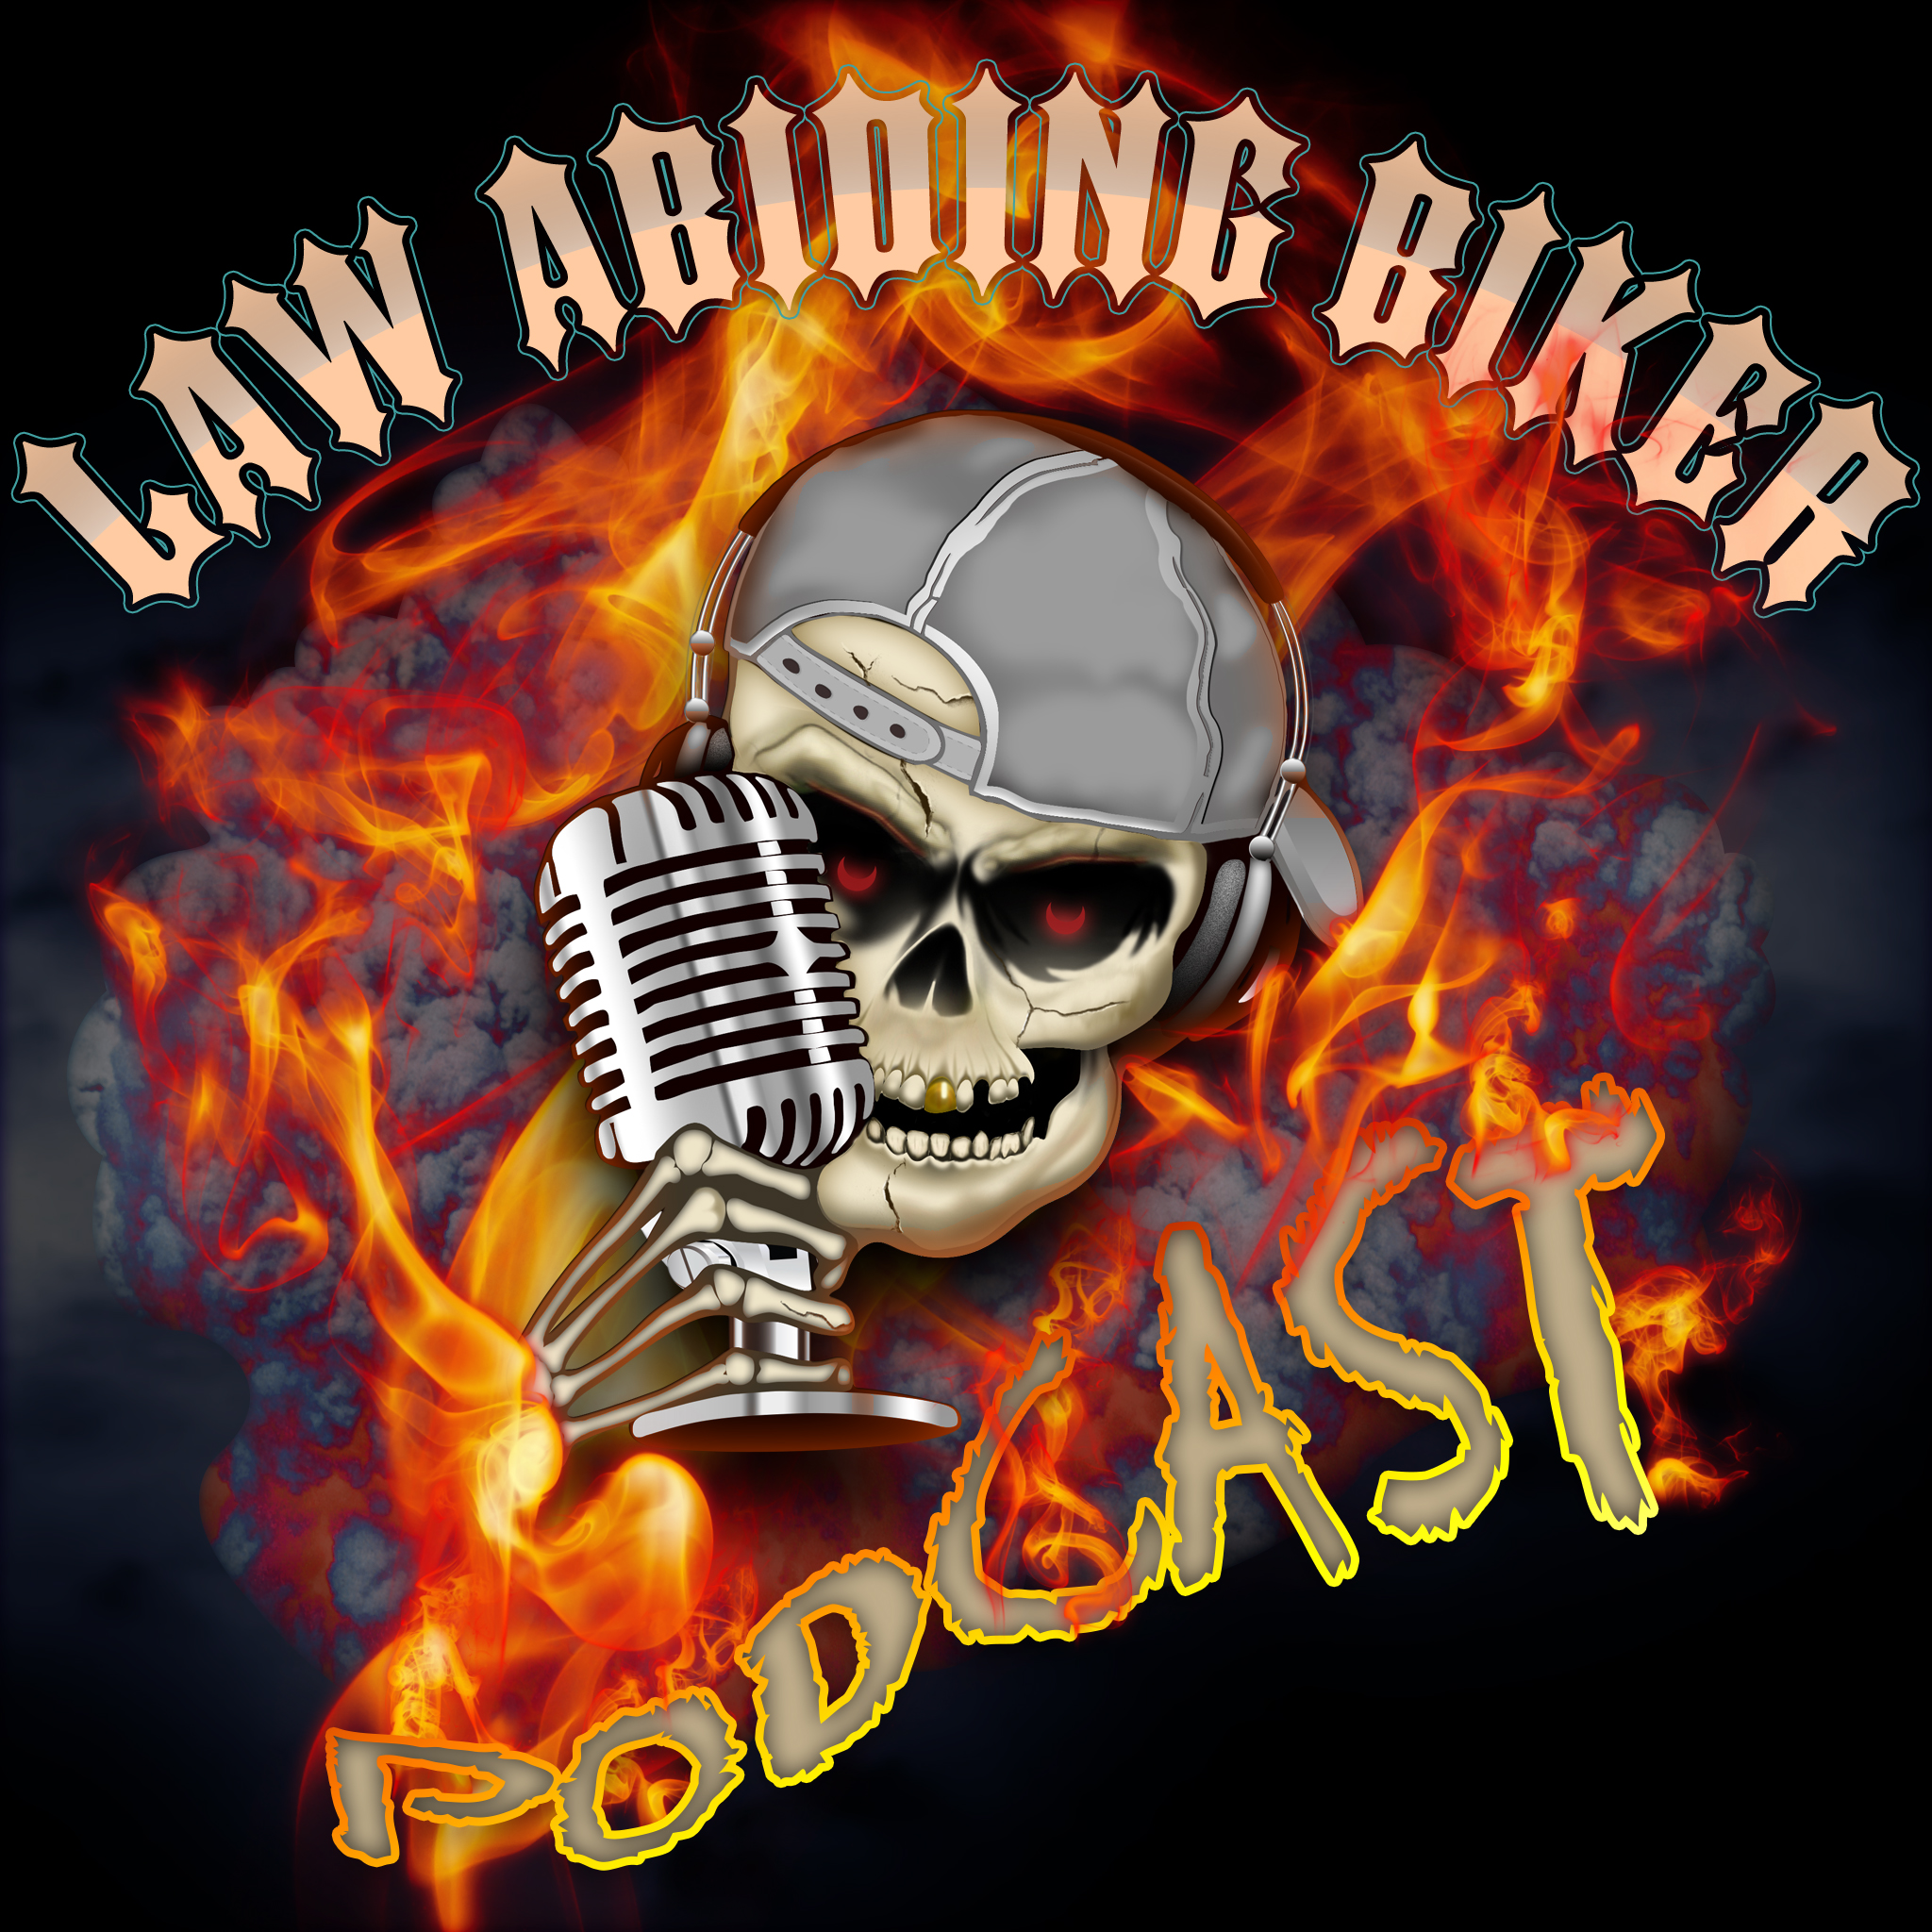 Law Abiding Biker | Street Biker Motorcycle Podcast